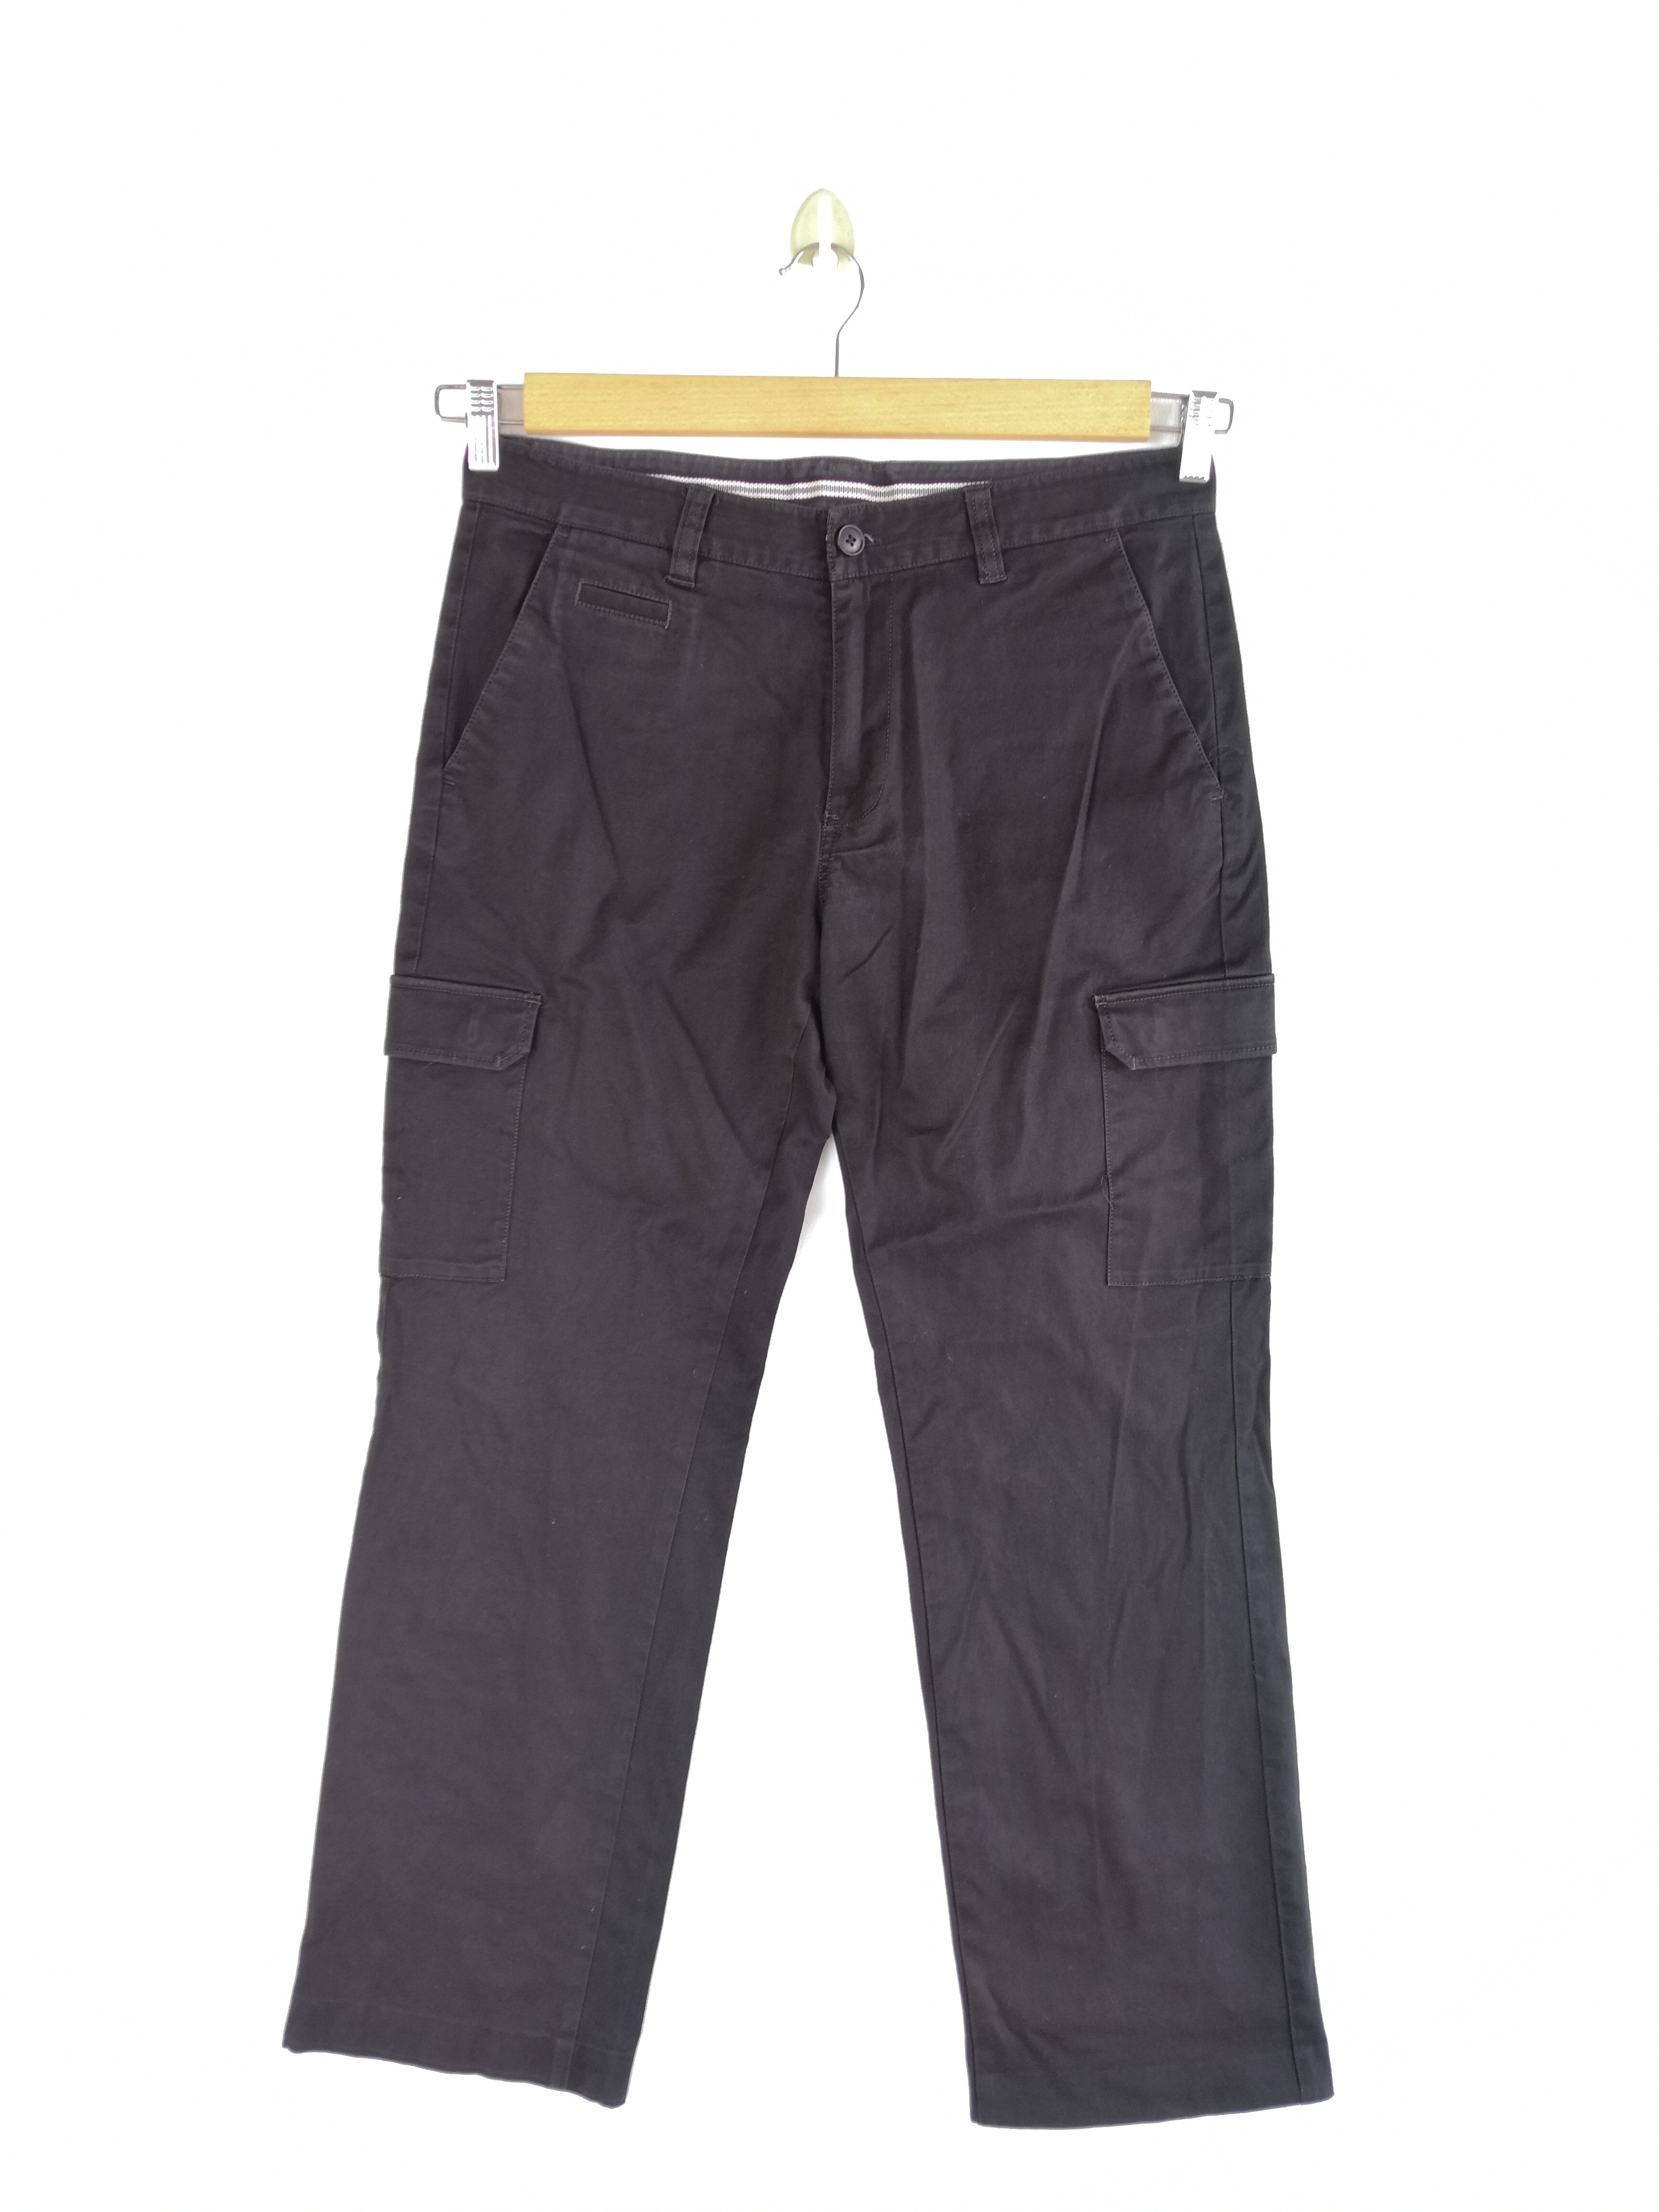 Vintage - GDO Japanese Cargo Pants Bondage Trousers Utility Pants - 1